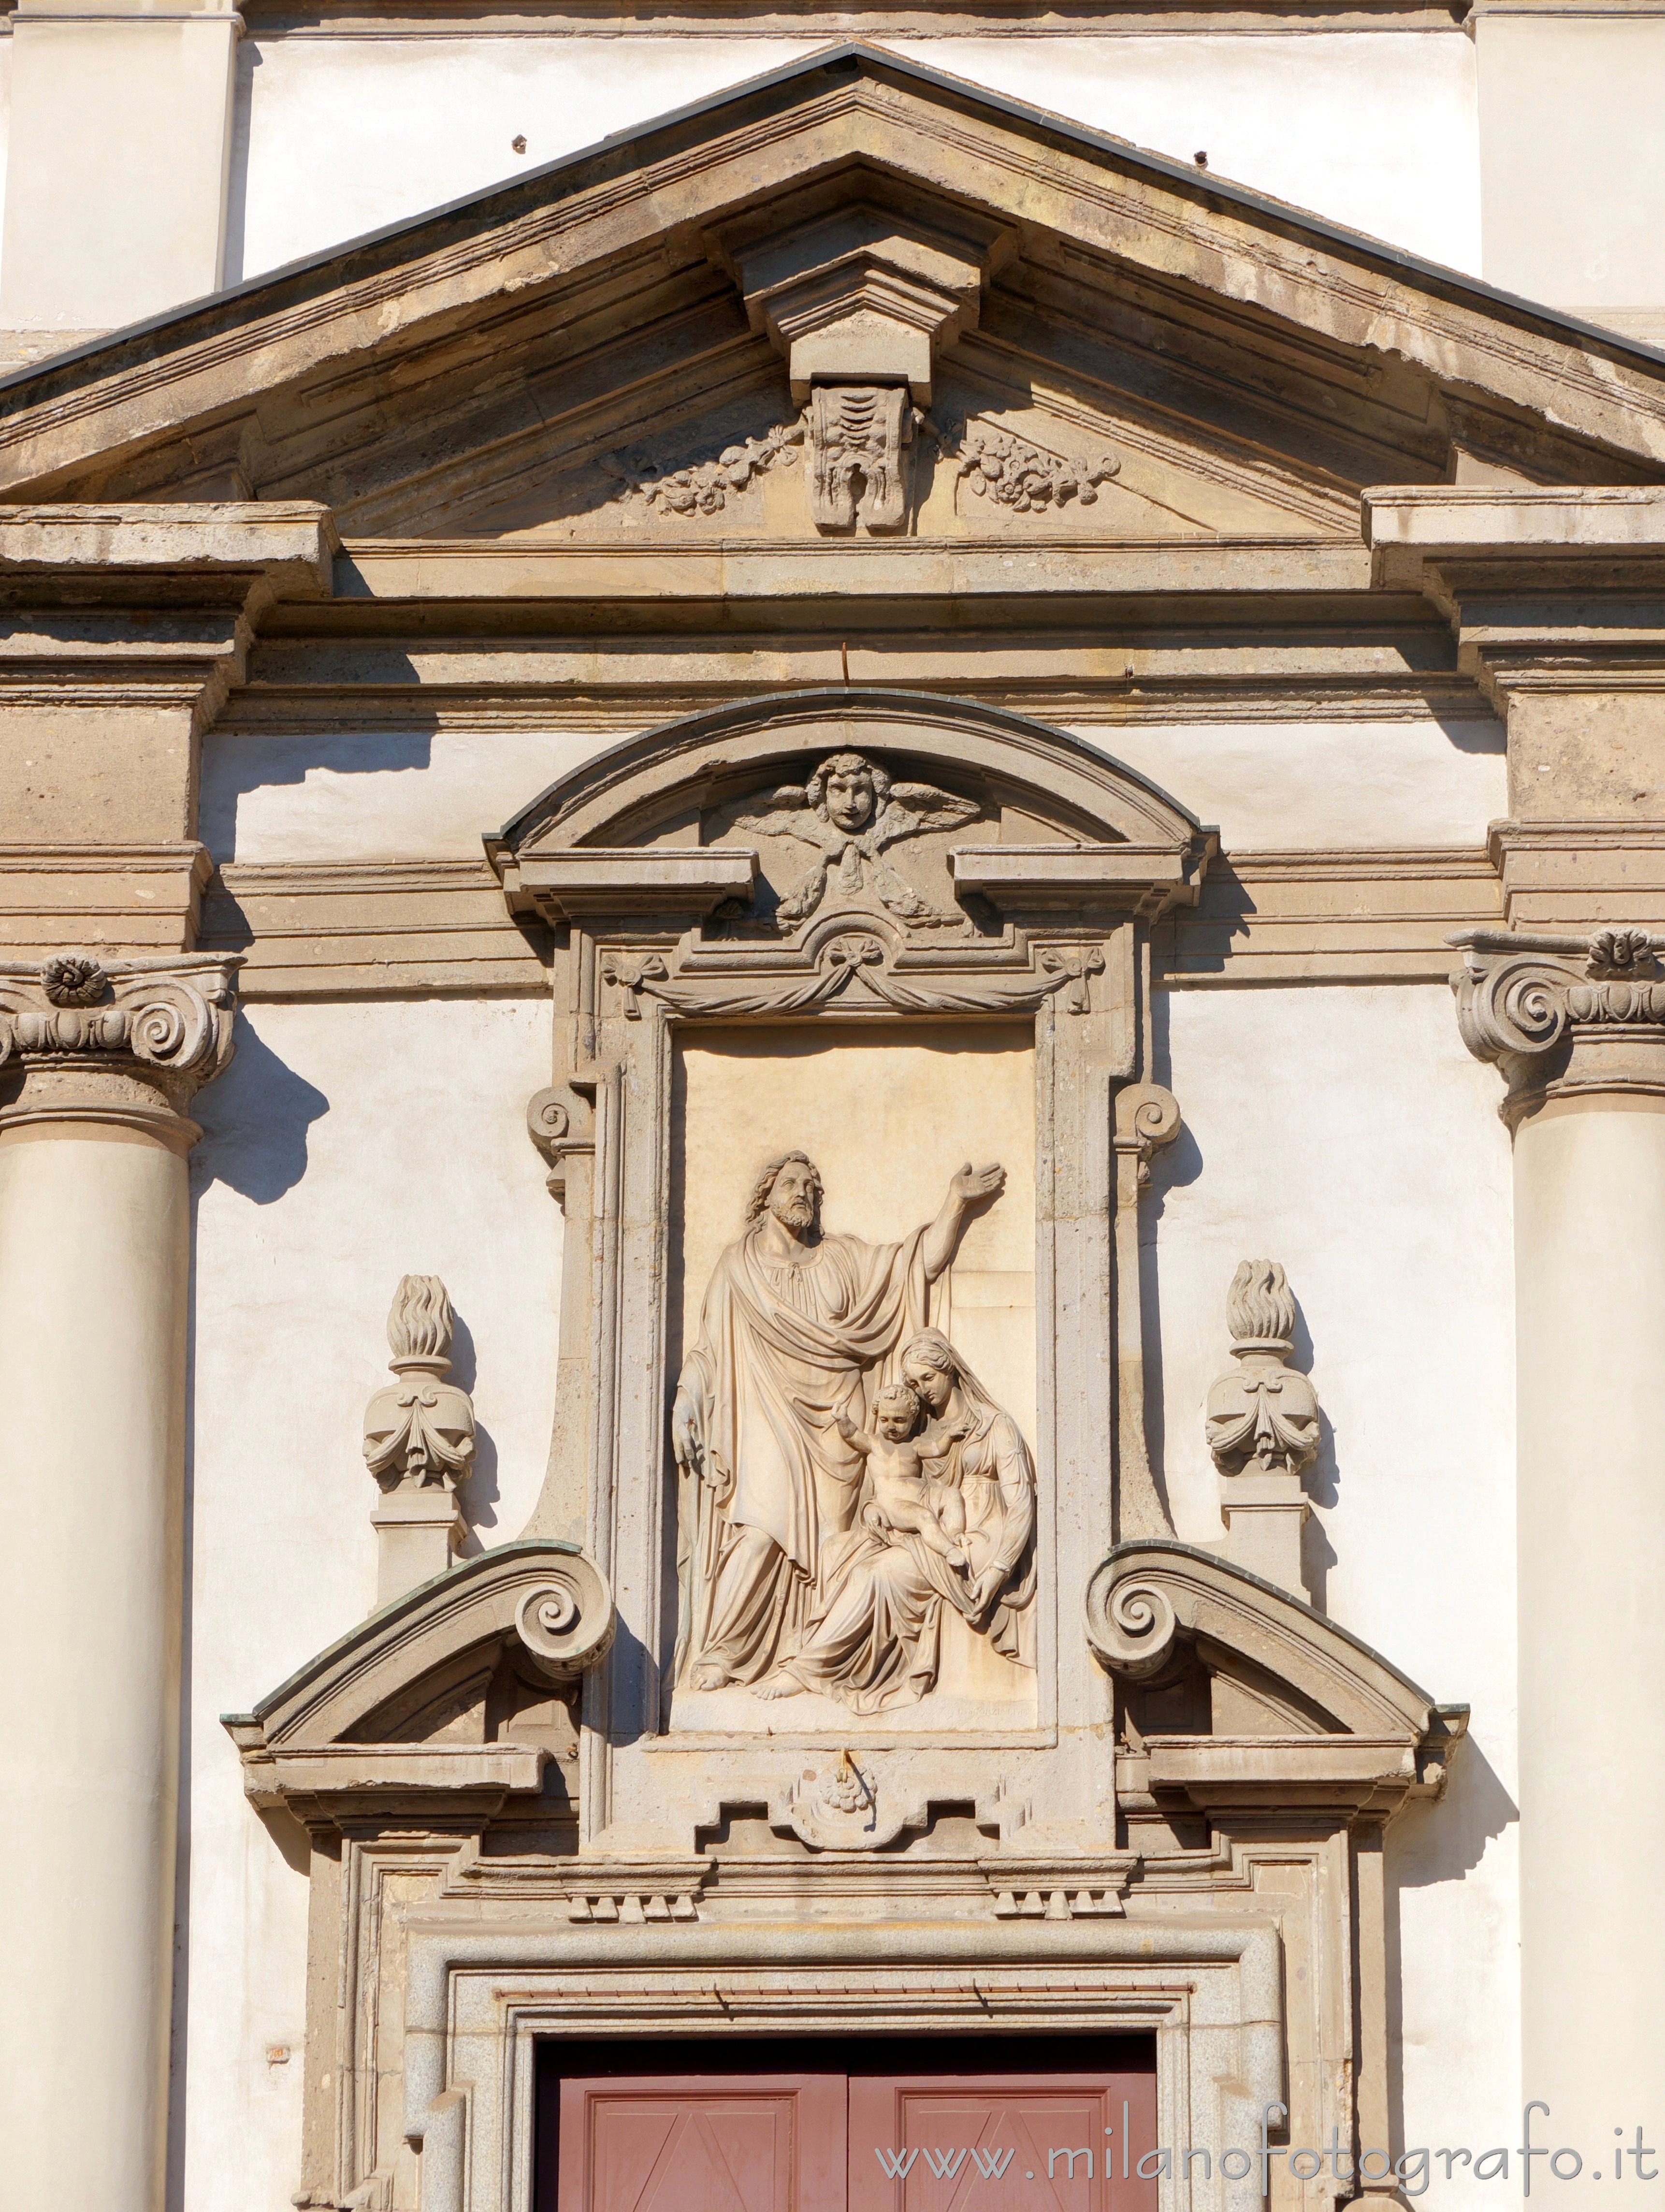 Milan (Italy): Central part of the facade of the Church of San Giuseppe - Milan (Italy)